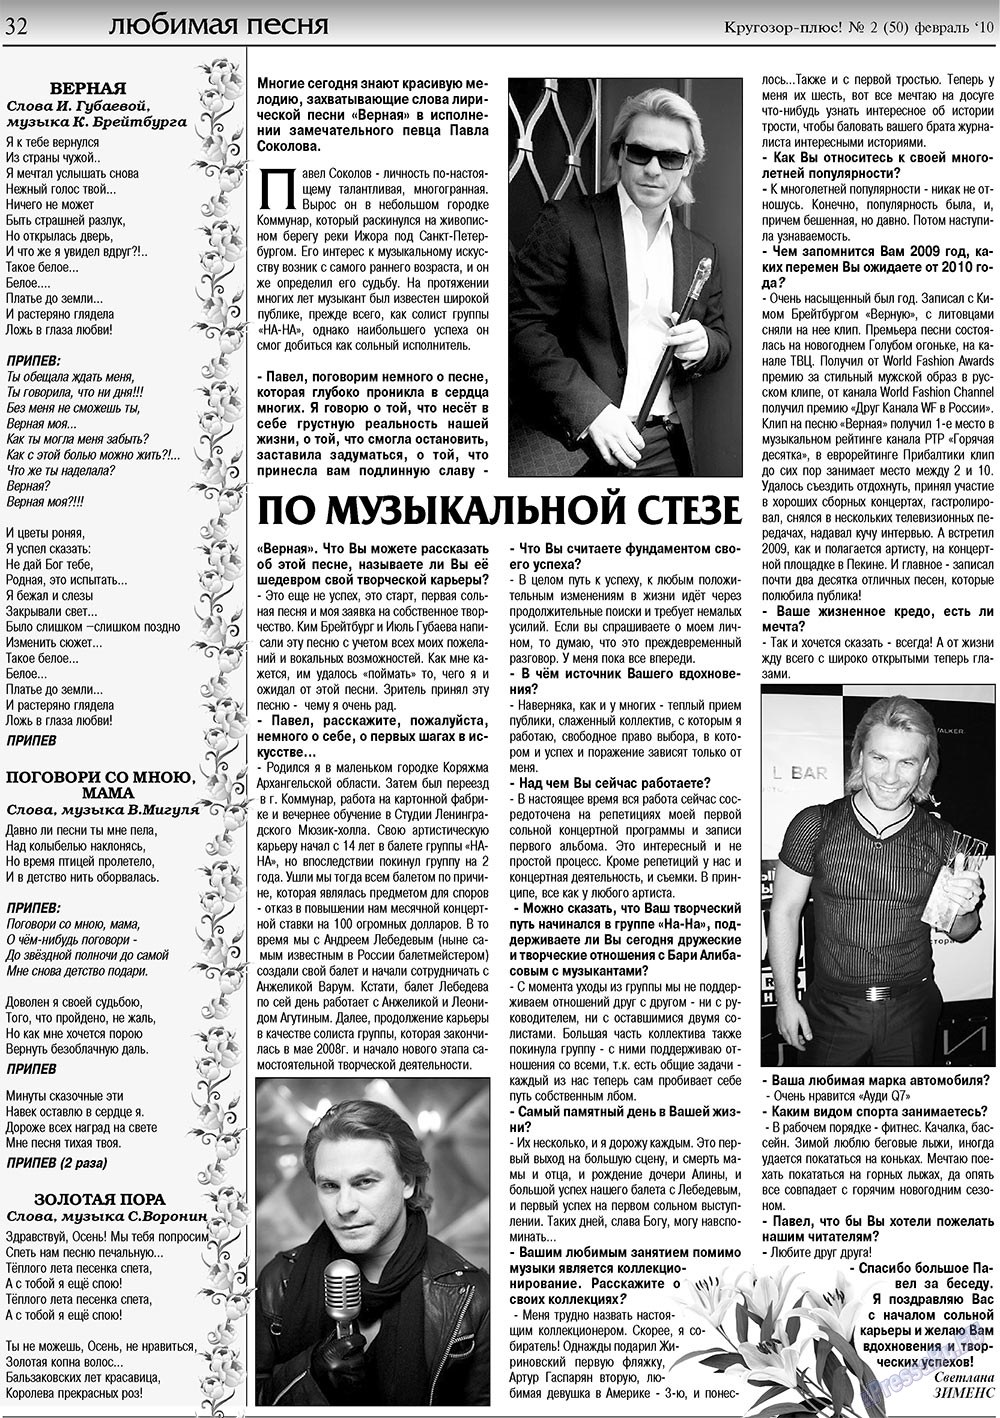 Кругозор плюс!, газета. 2010 №2 стр.32